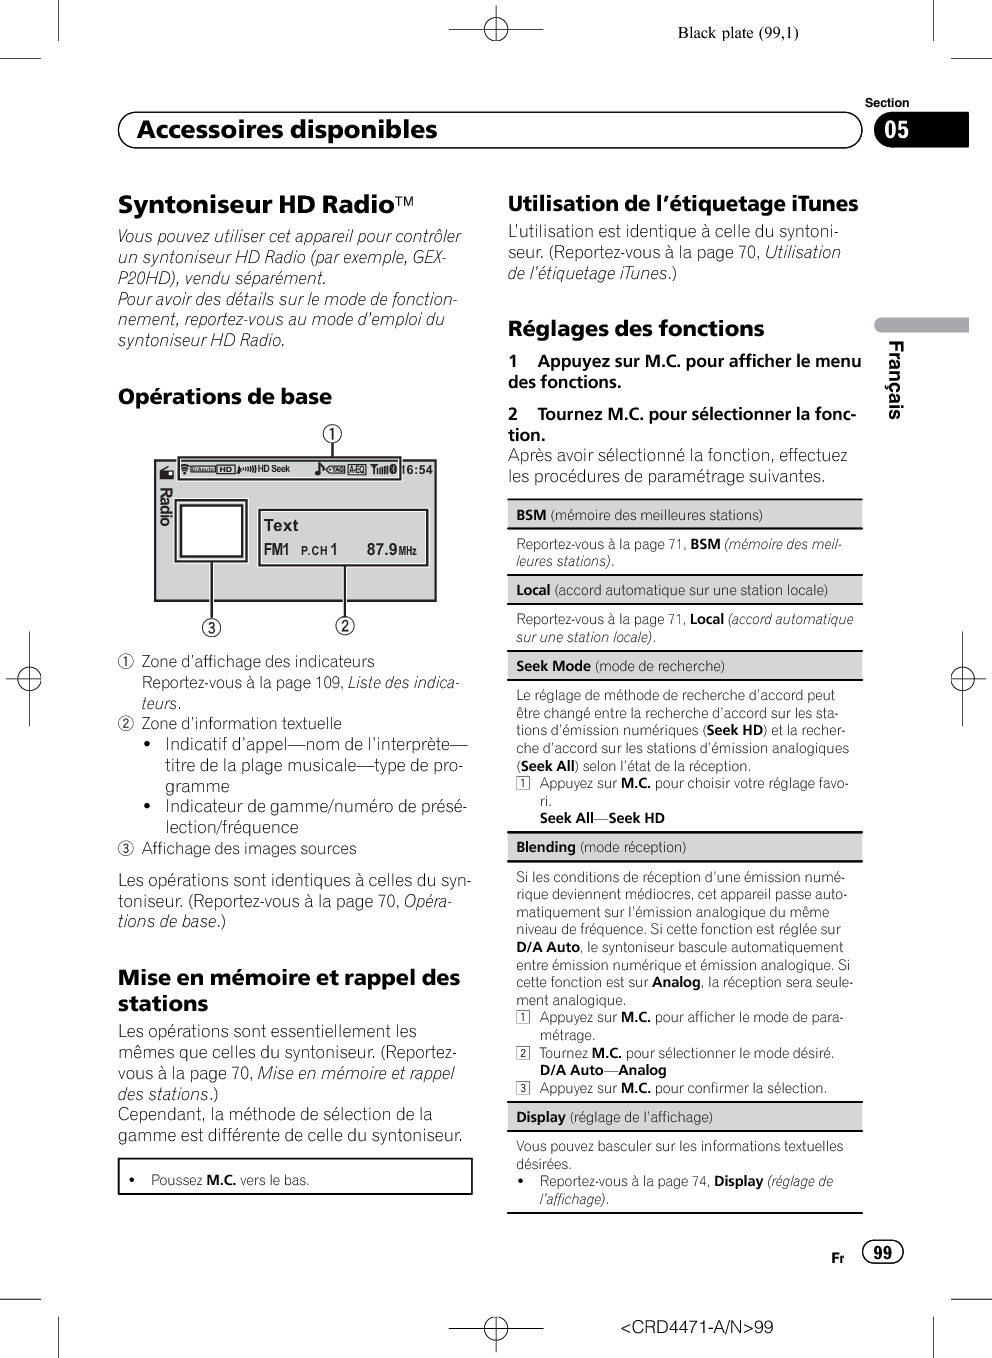 Black plate (99,1)Syntoniseur HD RadioäVous pouvez utiliser cet appareil pour contrôlerun syntoniseur HD Radio (par exemple, GEX-P20HD), vendu séparément.Pour avoir des détails sur le mode de fonction-nement, reportez-vous au mode d’emploi dusyntoniseur HD Radio.Opérations de base16:54TextFM11    87.9P.CHMHzRadioA-EQD/AautoHD Seek122231Zone d’affichage des indicateursReportez-vous à la page 109, Liste des indica-teurs.2Zone d’information textuelle!Indicatif d’appel—nom de l’interprète—titre de la plage musicale—type de pro-gramme!Indicateur de gamme/numéro de présé-lection/fréquence3Affichage des images sourcesLes opérations sont identiques à celles du syn-toniseur. (Reportez-vous à la page 70, Opéra-tions de base.)Mise en mémoire et rappel desstationsLes opérations sont essentiellement lesmêmes que celles du syntoniseur. (Reportez-vous à la page 70, Mise en mémoire et rappeldes stations.)Cependant, la méthode de sélection de lagamme est différente de celle du syntoniseur.!Poussez M.C. vers le bas.Utilisation de l’étiquetage iTunesL’utilisation est identique à celle du syntoni-seur. (Reportez-vous à la page 70, Utilisationde l’étiquetage iTunes.)Réglages des fonctions1 Appuyez sur M.C. pour afficher le menudes fonctions.2 Tournez M.C. pour sélectionner la fonc-tion.Après avoir sélectionné la fonction, effectuezles procédures de paramétrage suivantes.BSM (mémoire des meilleures stations)Reportez-vous à la page 71, BSM (mémoire des meil-leures stations).Local (accord automatique sur une station locale)Reportez-vous à la page 71, Local (accord automatiquesur une station locale).Seek Mode (mode de recherche)Le réglage de méthode de recherche d’accord peutêtre changé entre la recherche d’accord sur les sta-tions d’émission numériques (Seek HD) et la recher-che d’accord sur les stations d’émission analogiques(Seek All) selon l’état de la réception.1Appuyez sur M.C. pour choisir votre réglage favo-ri.Seek All—Seek HDBlending (mode réception)Si les conditions de réception d’une émission numé-rique deviennent médiocres, cet appareil passe auto-matiquement sur l’émission analogique du mêmeniveau de fréquence. Si cette fonction est réglée surD/A Auto, le syntoniseur bascule automatiquemententre émission numérique et émission analogique. Sicette fonction est sur Analog, la réception sera seule-ment analogique.1Appuyez sur M.C. pour afficher le mode de para-métrage.2Tournez M.C. pour sélectionner le mode désiré.D/A Auto—Analog3Appuyez sur M.C. pour confirmer la sélection.Display (réglage de l’affichage)Vous pouvez basculer sur les informations textuellesdésirées.!Reportez-vous à la page 74, Display (réglage del’affichage).&lt;CRD4471-A/N&gt;99Fr 99SectionFrançais05Accessoires disponibles